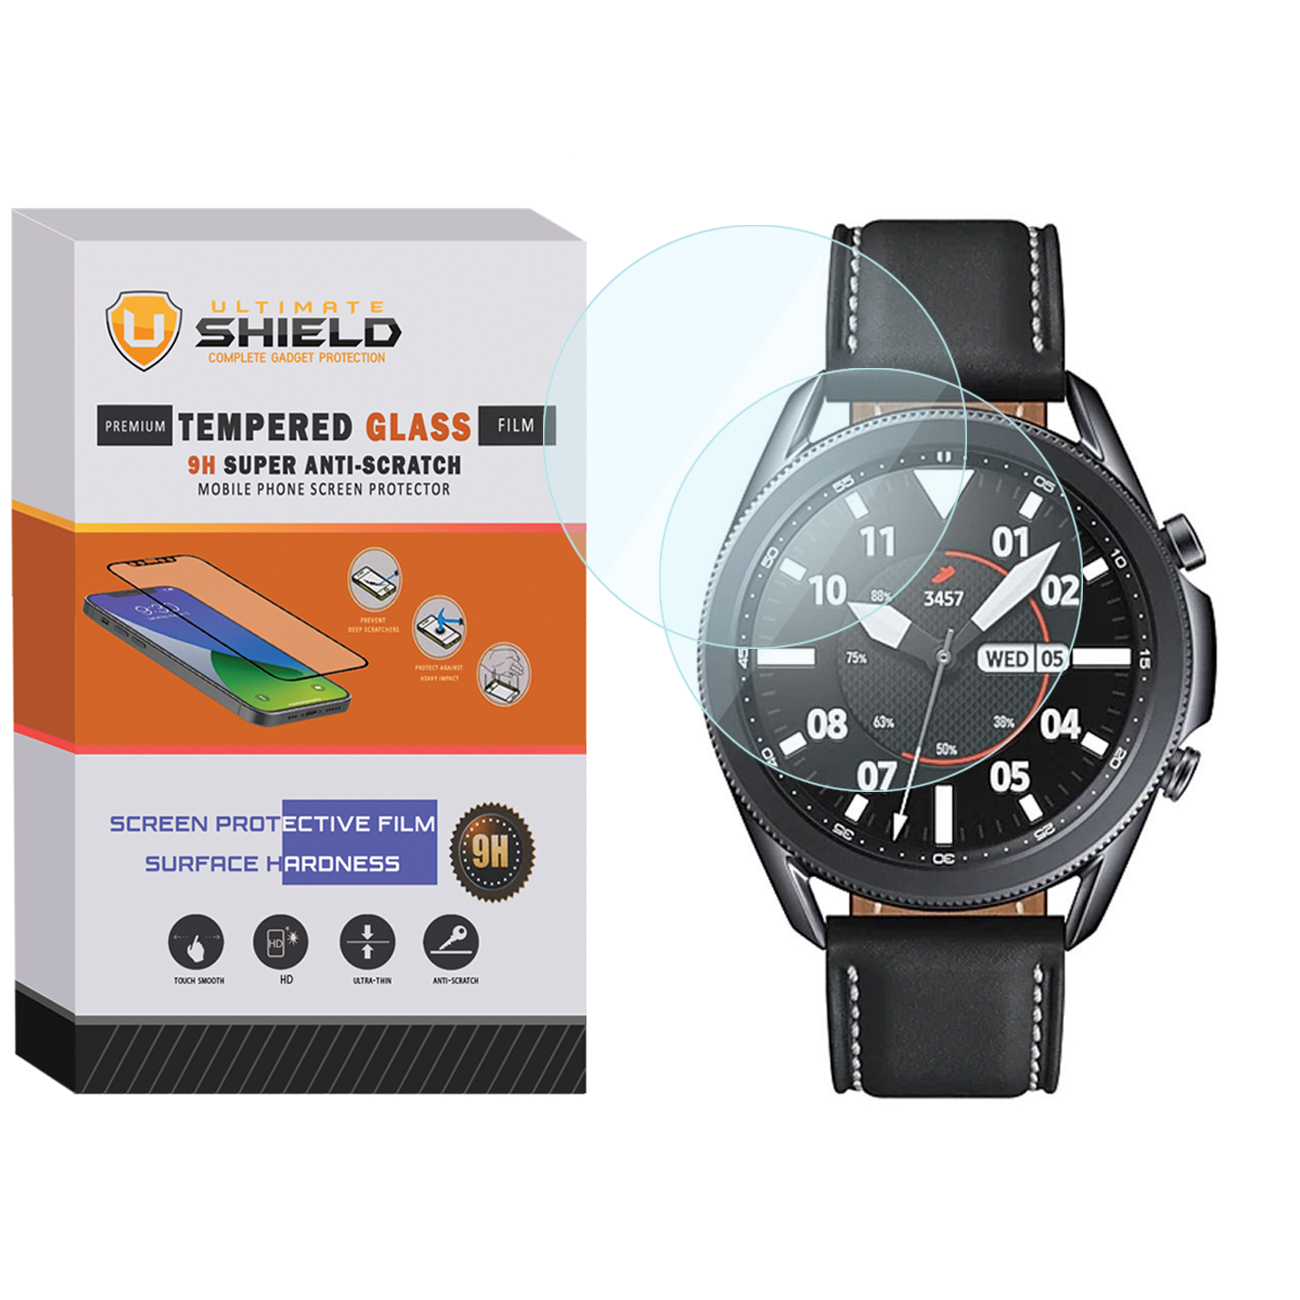 محافظ صفحه نمایش شیشه ای آلتیمیت شیلد مدل SH-UL مناسب برای ساعت هوشمند سامسونگ Galaxy Watch 3 45mm بسته دو عددی